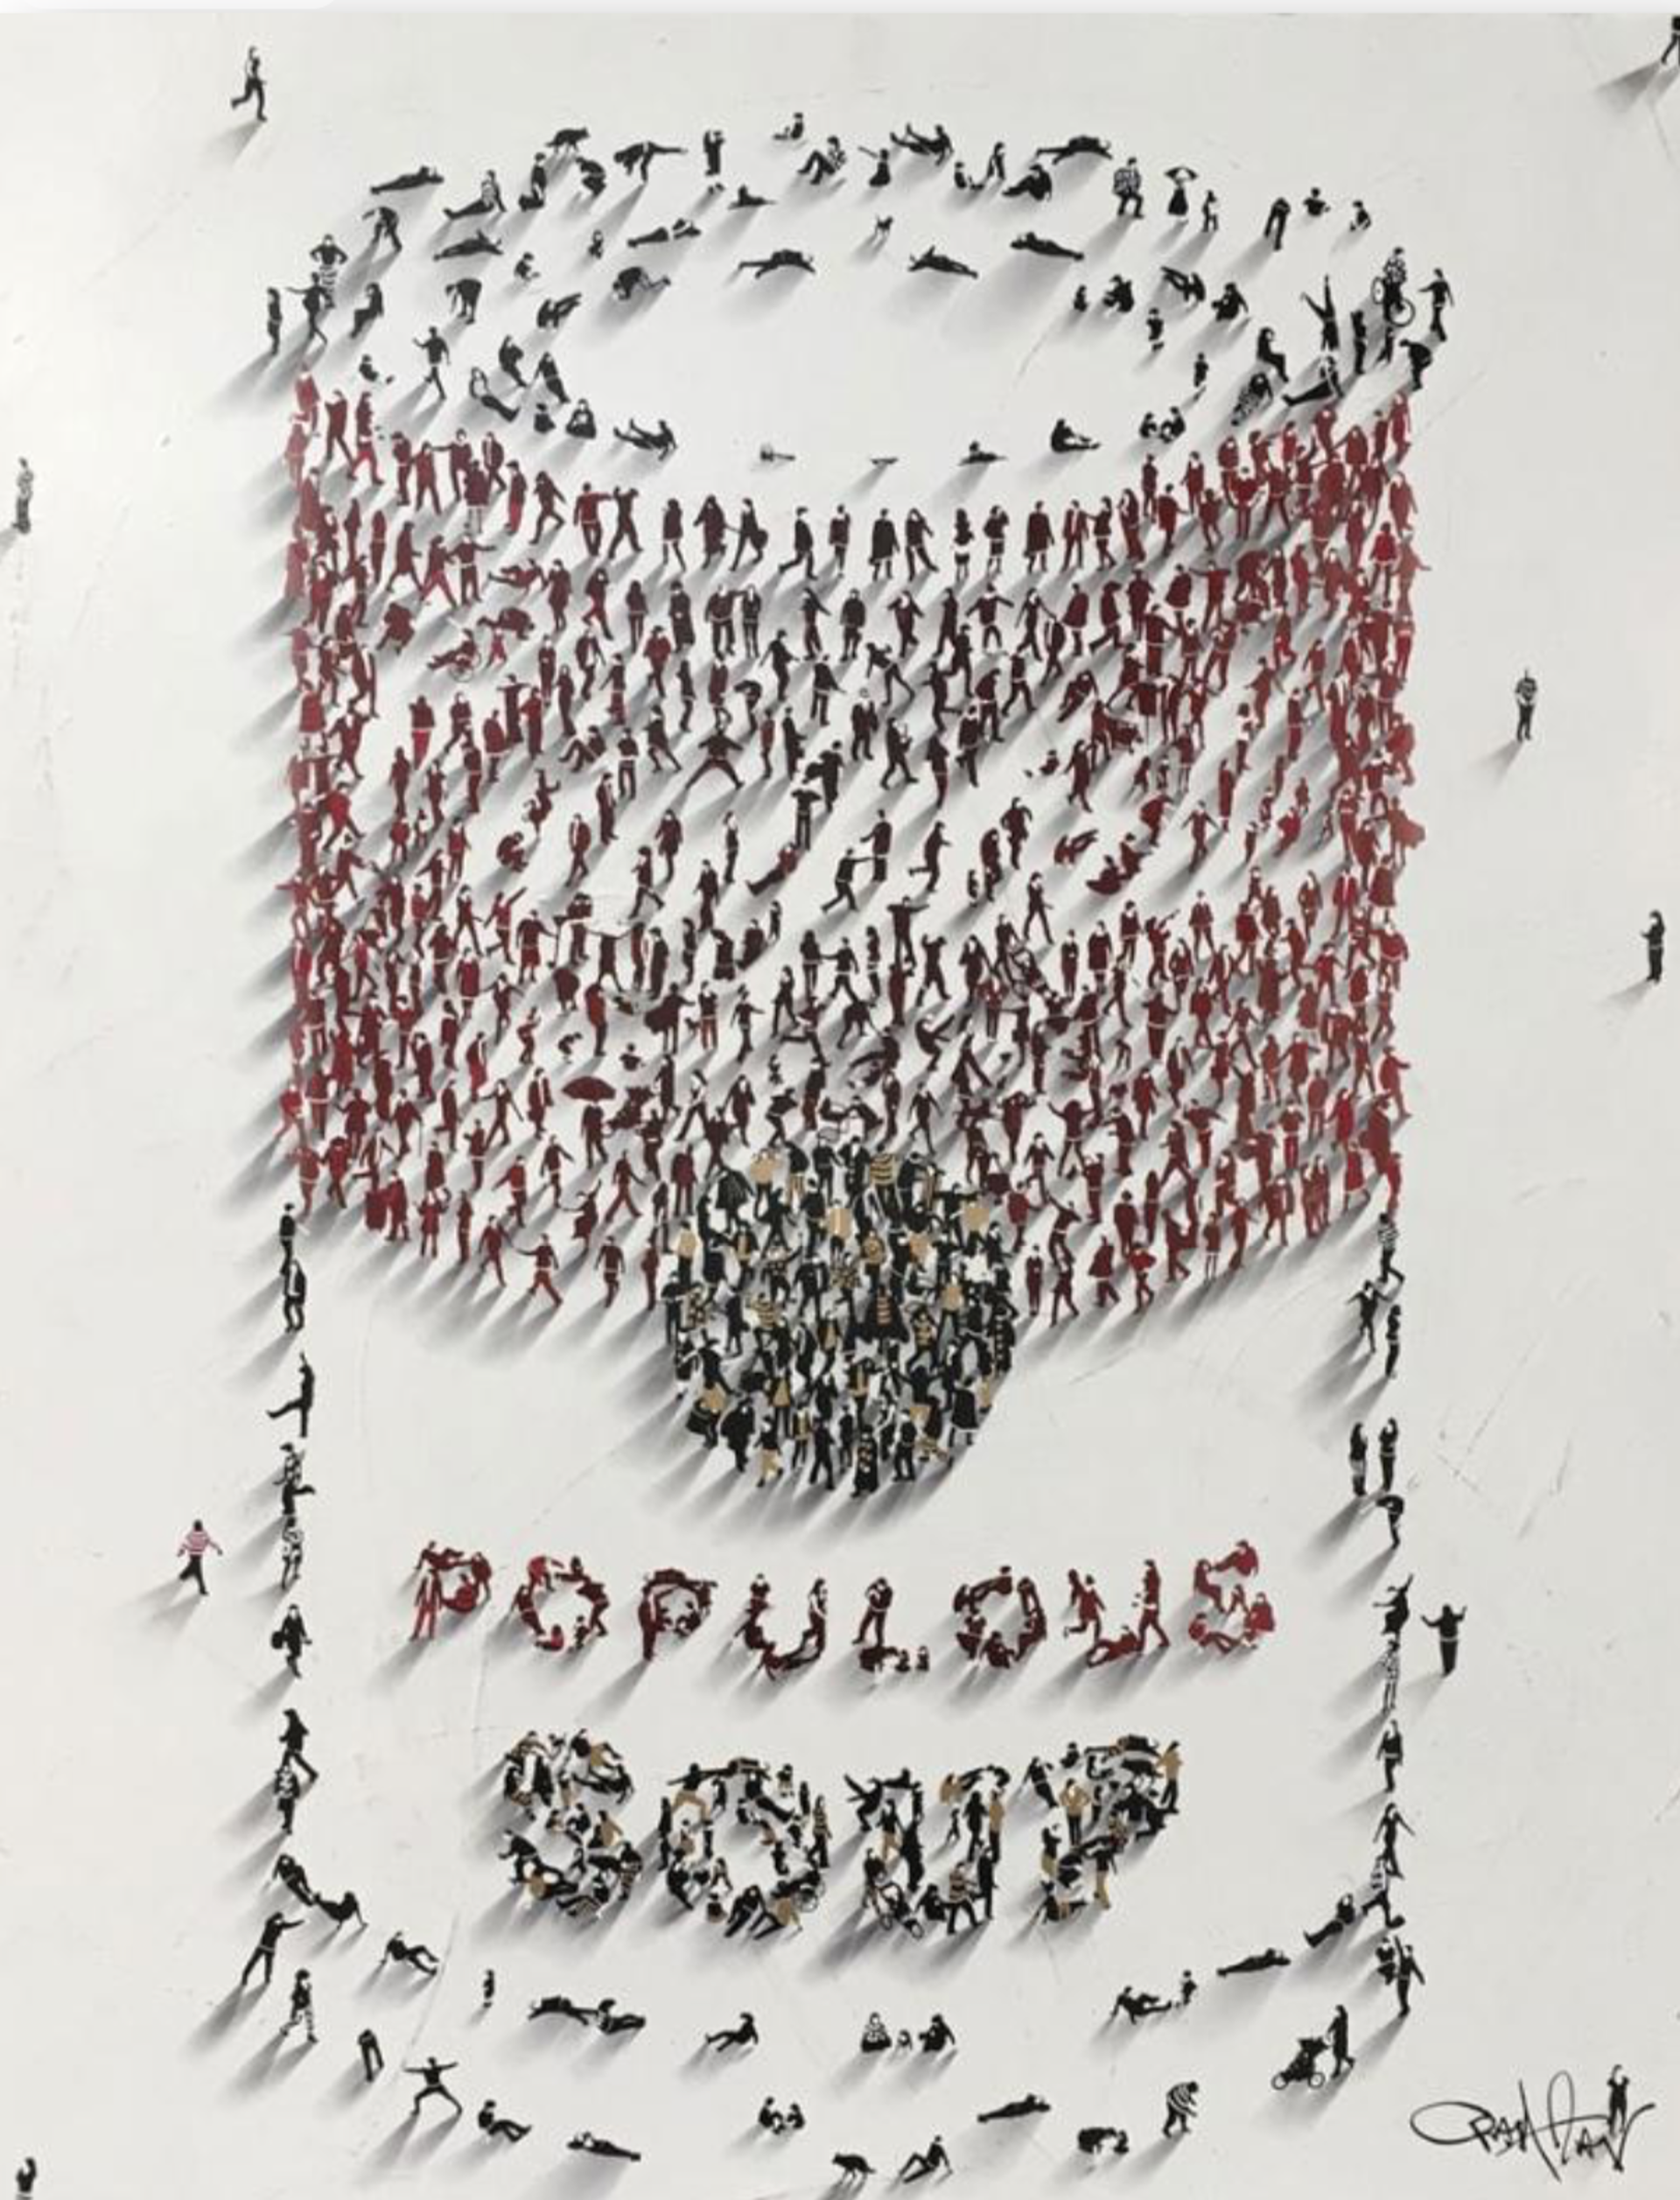 Populus Homage "Populus Soup" by Craig Alan